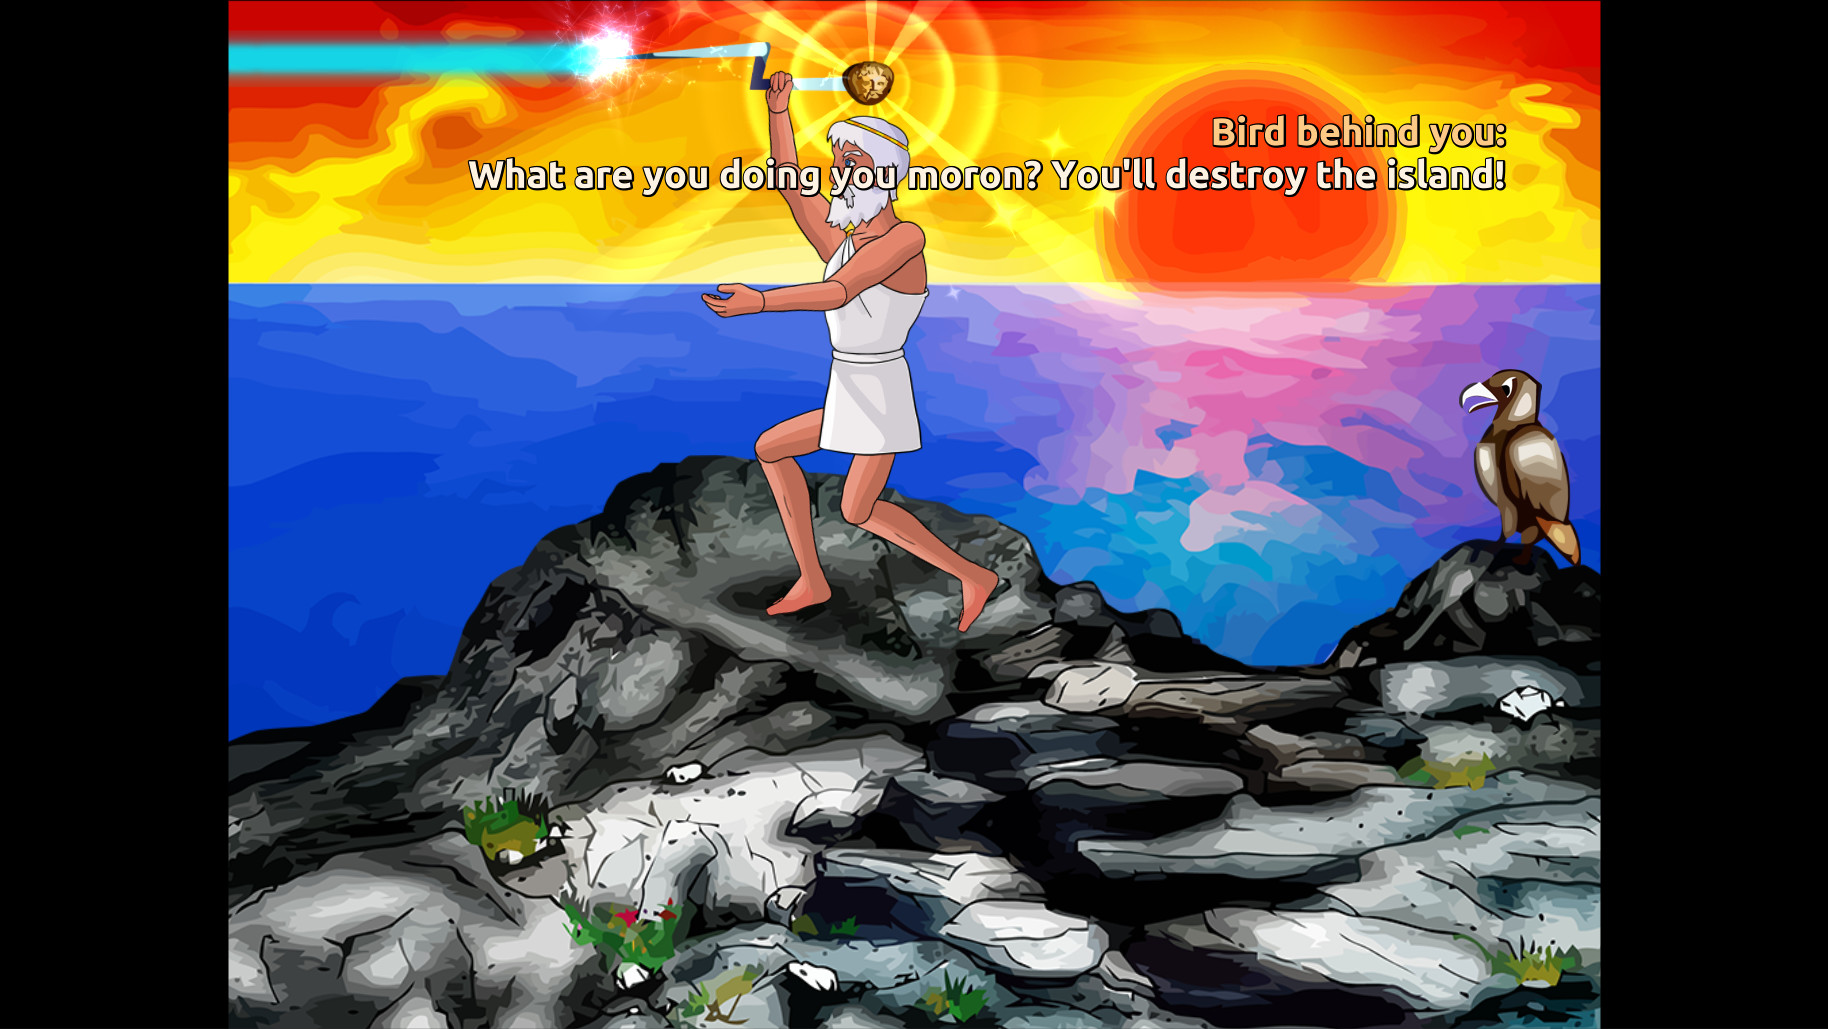 Zeus Quest Remastered screenshot